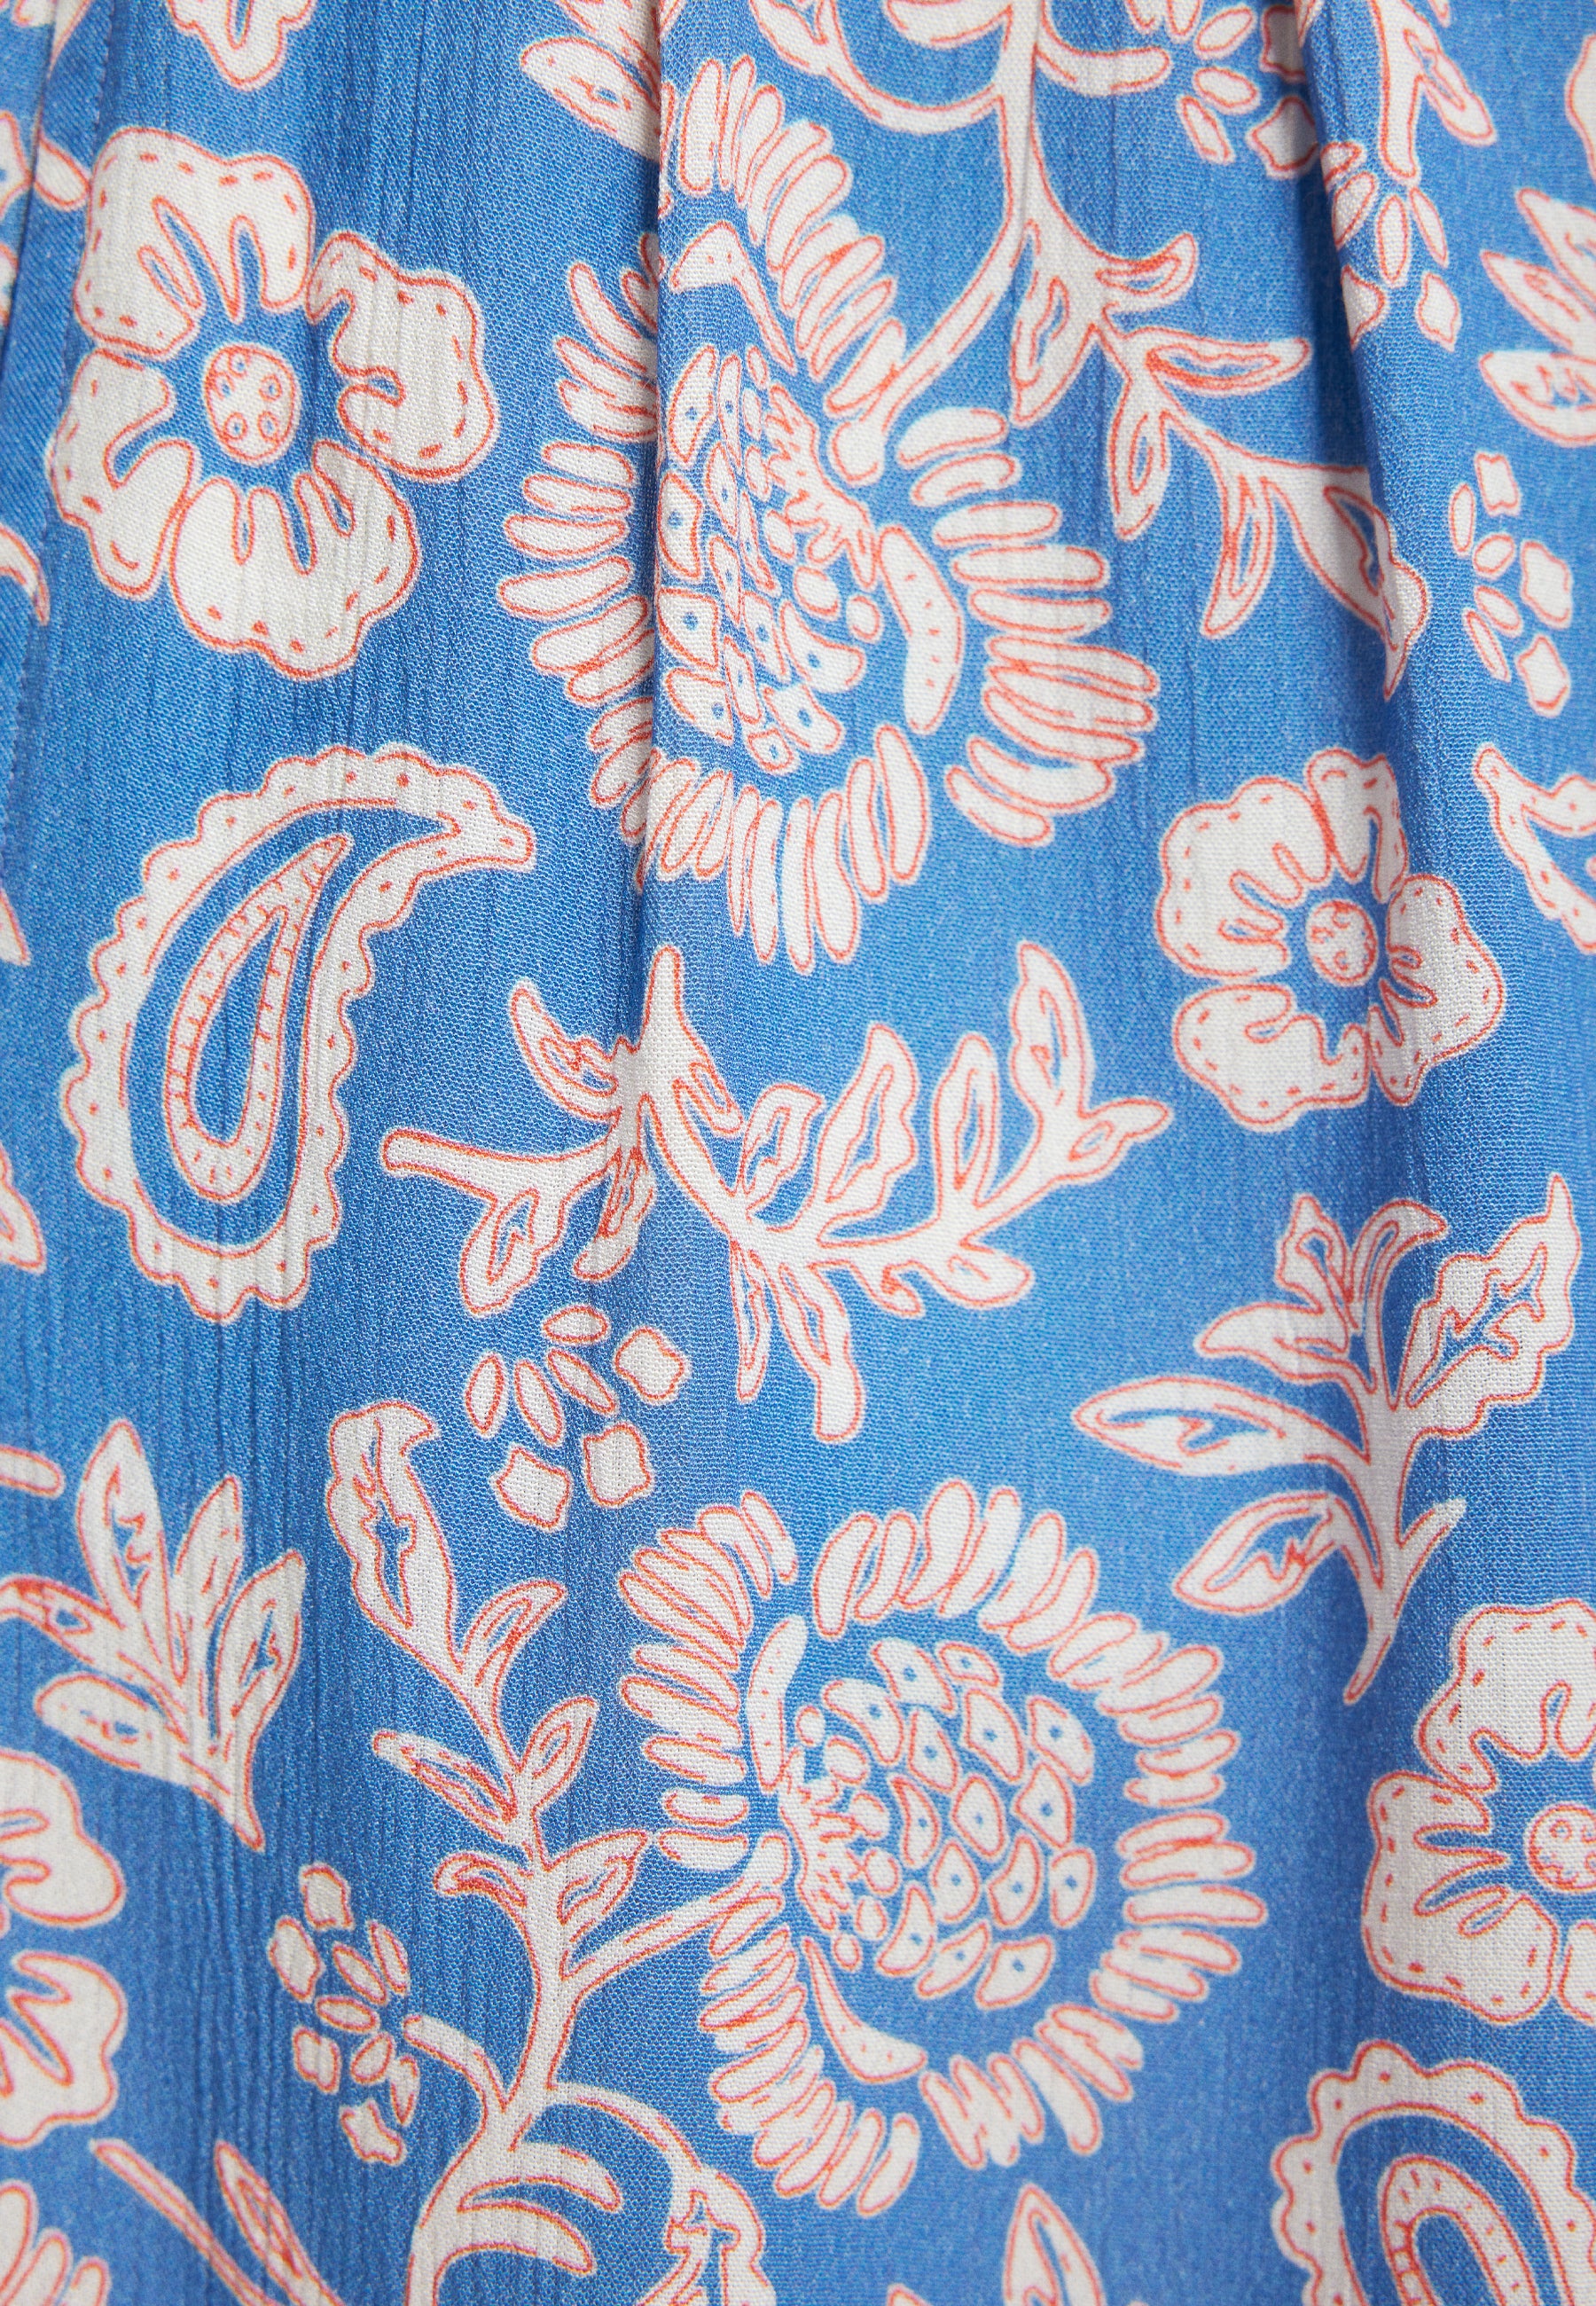 Woven Pants in Blue Paisley Print Hosen Mavi   